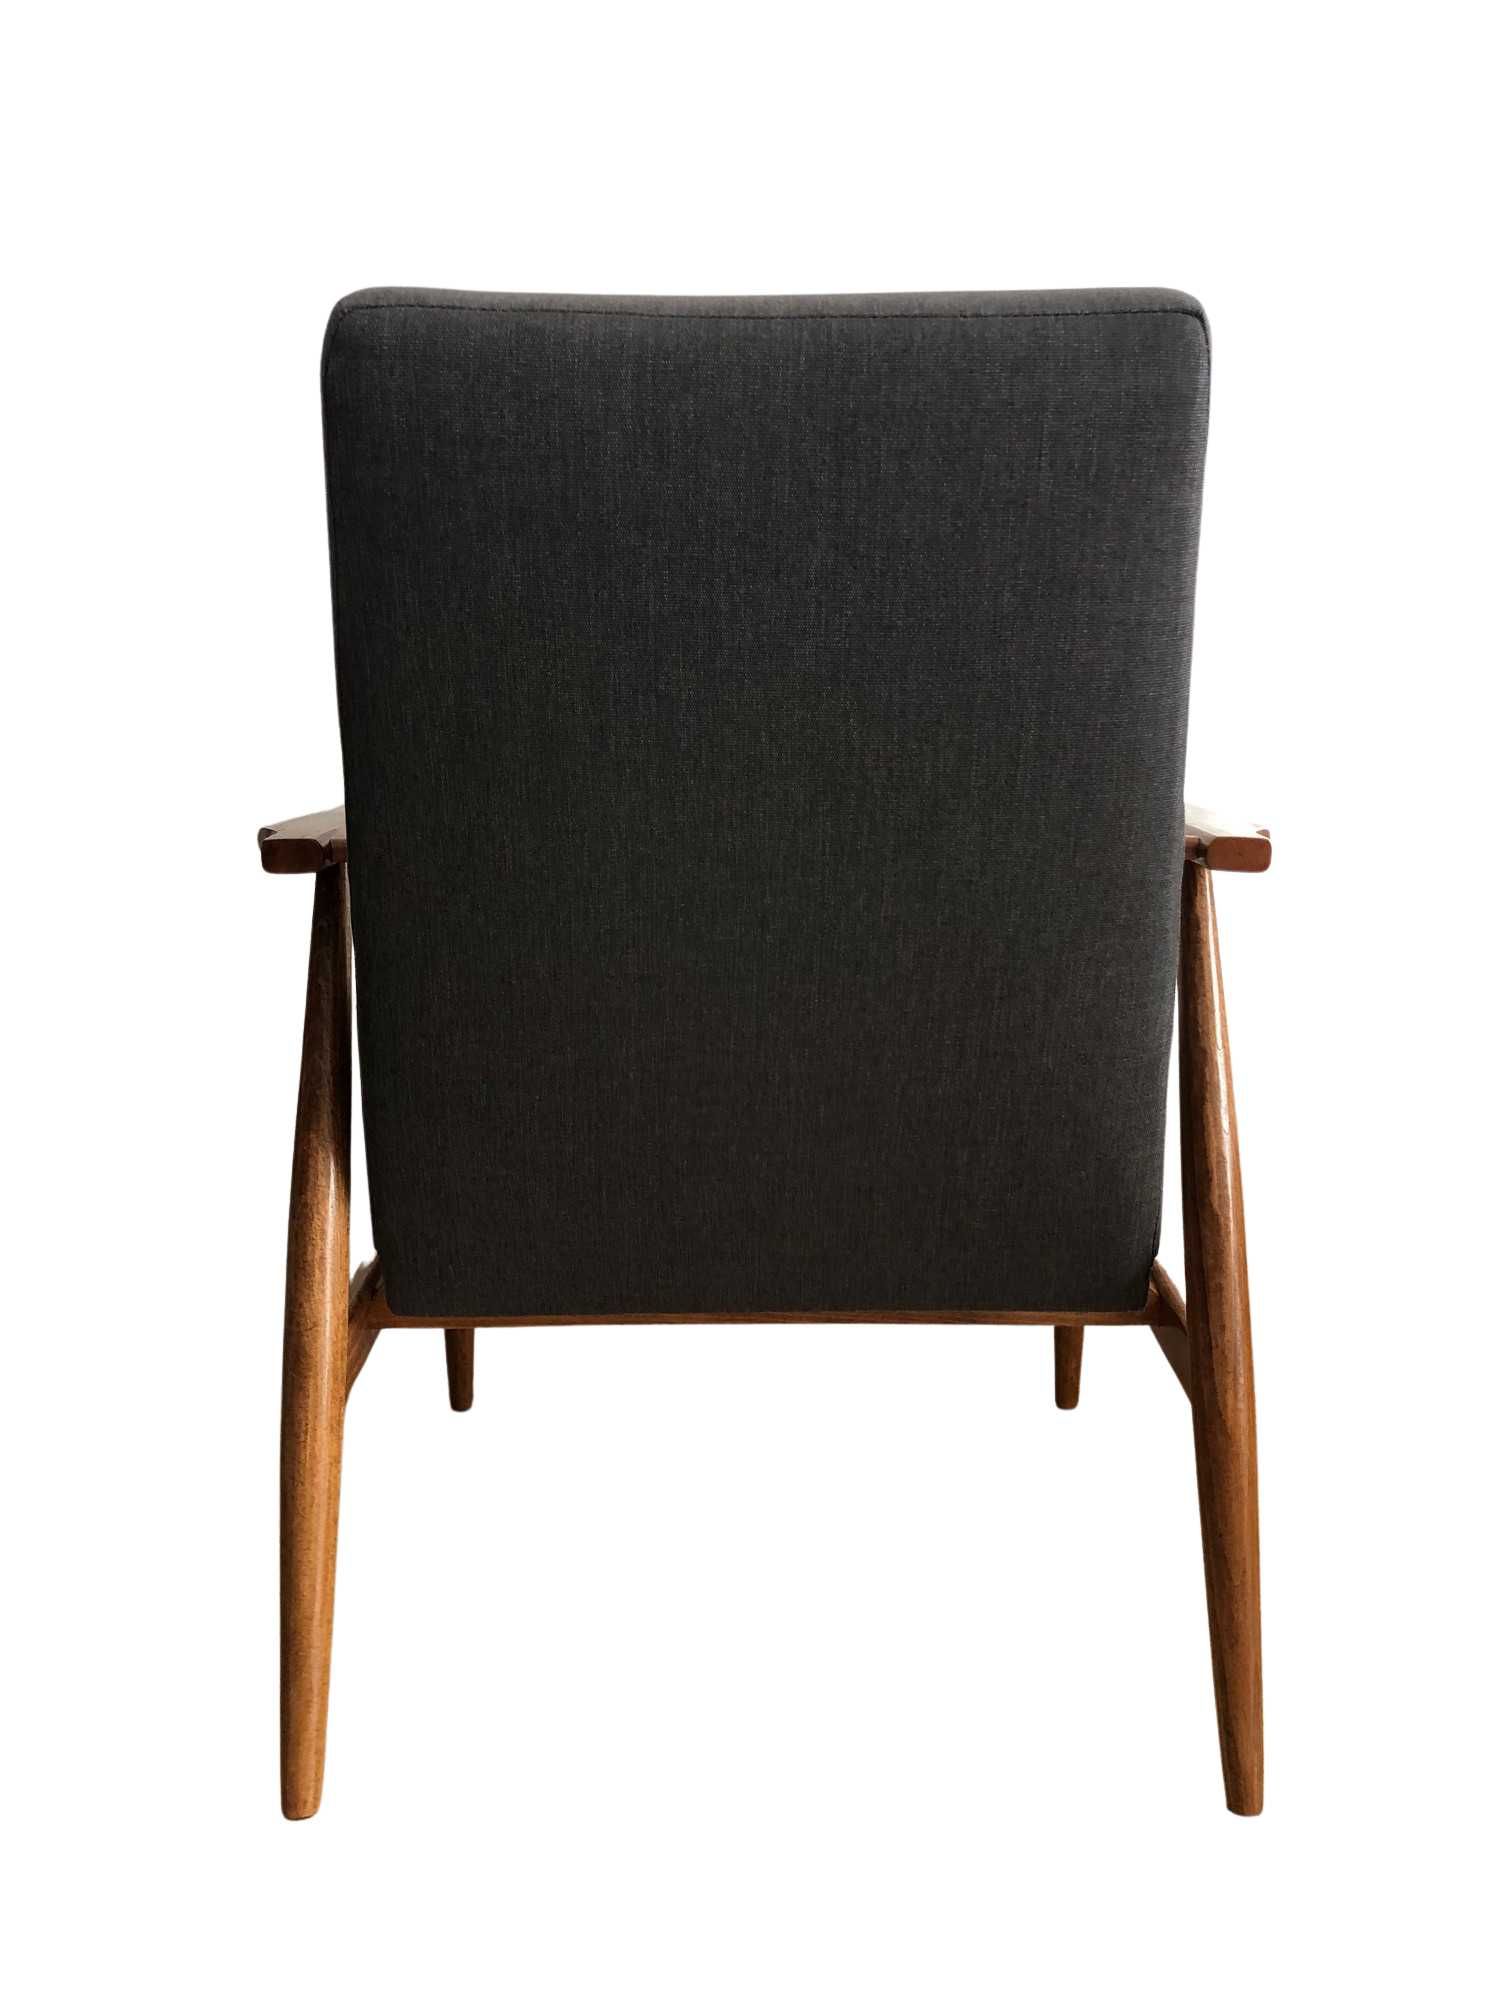 Fotele prl po renowacji, H. Lis, lata 60te, duńska tkanina Kvadrat